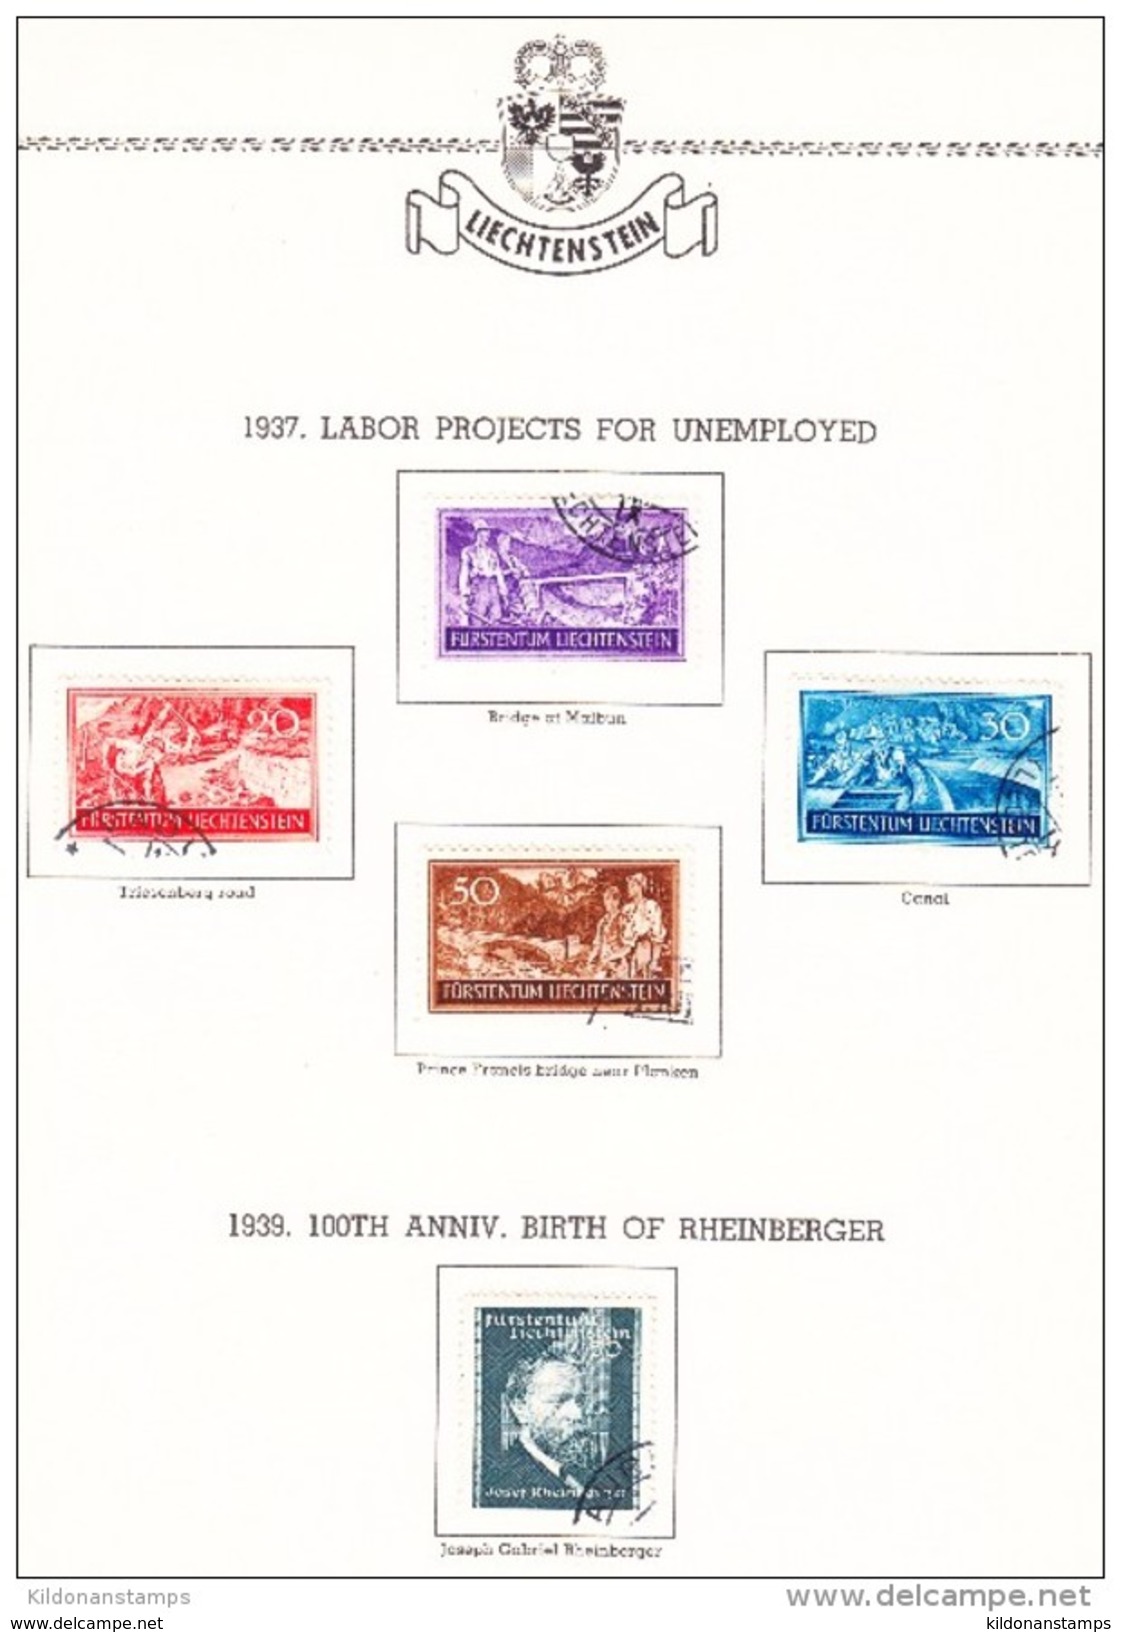 Liechtenstein 1912-66 cancelled collection, Minkus album & pages, Sc# see notes